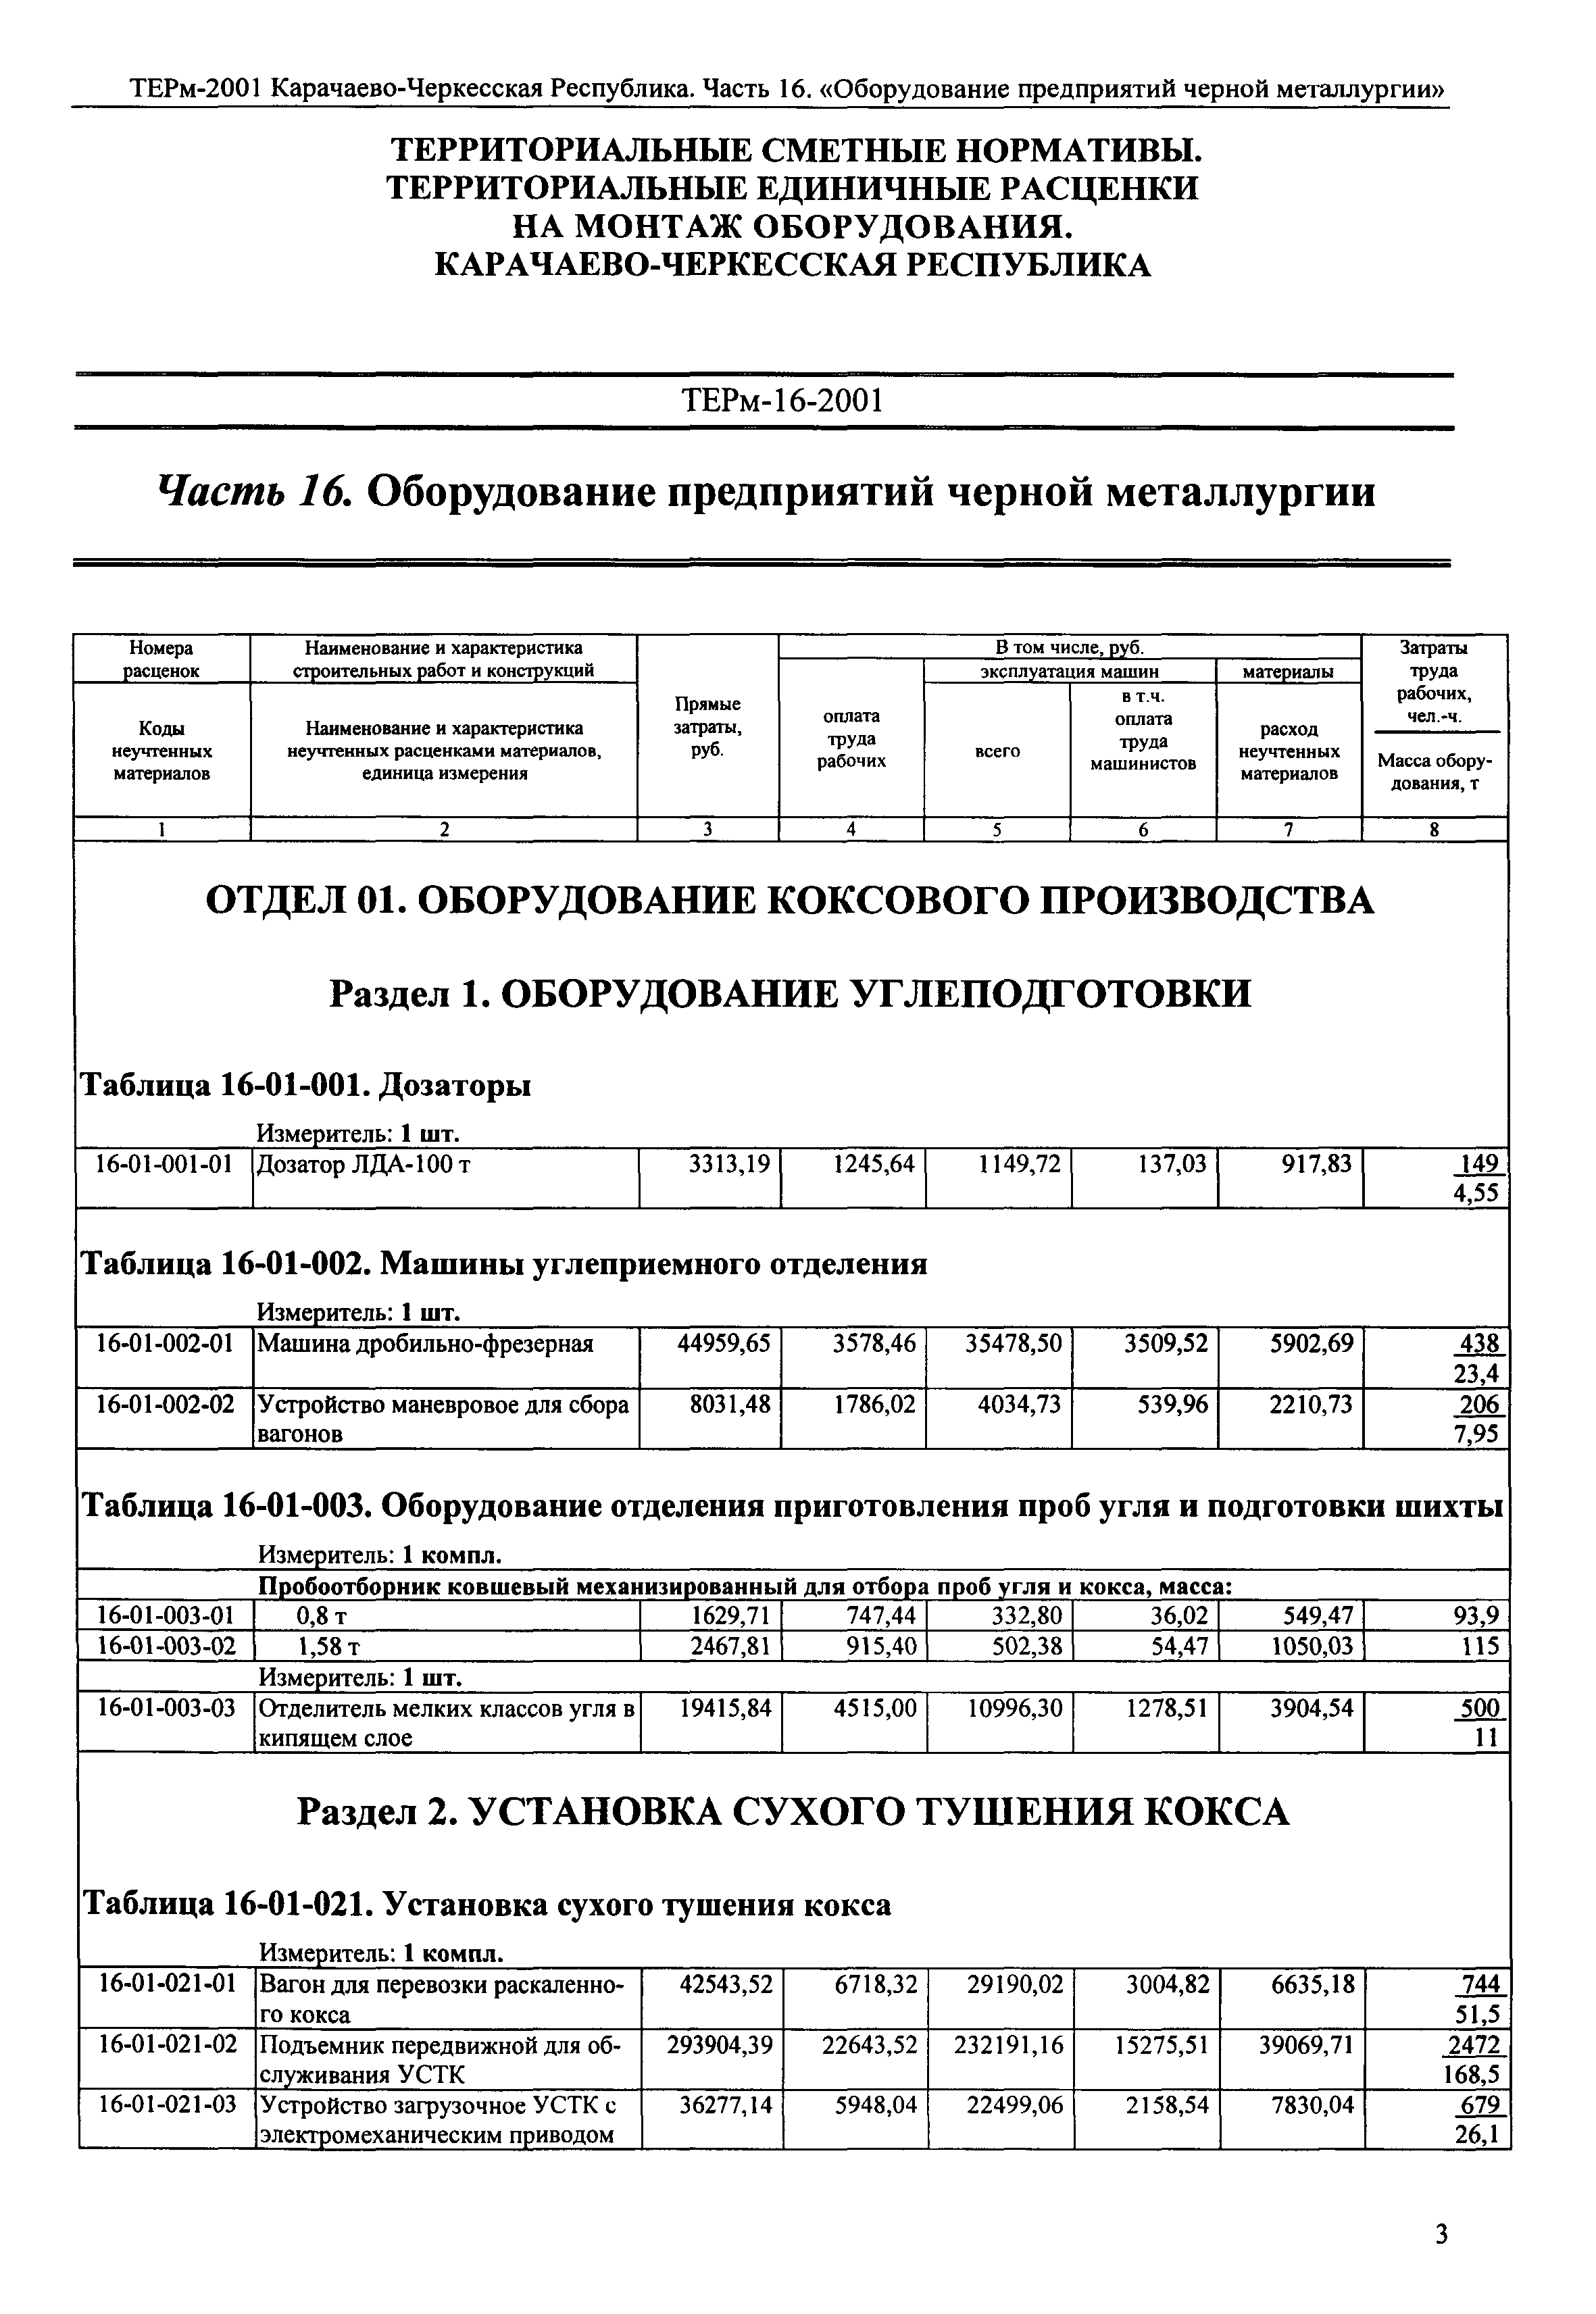 ТЕРм Карачаево-Черкесская Республика 16-2001